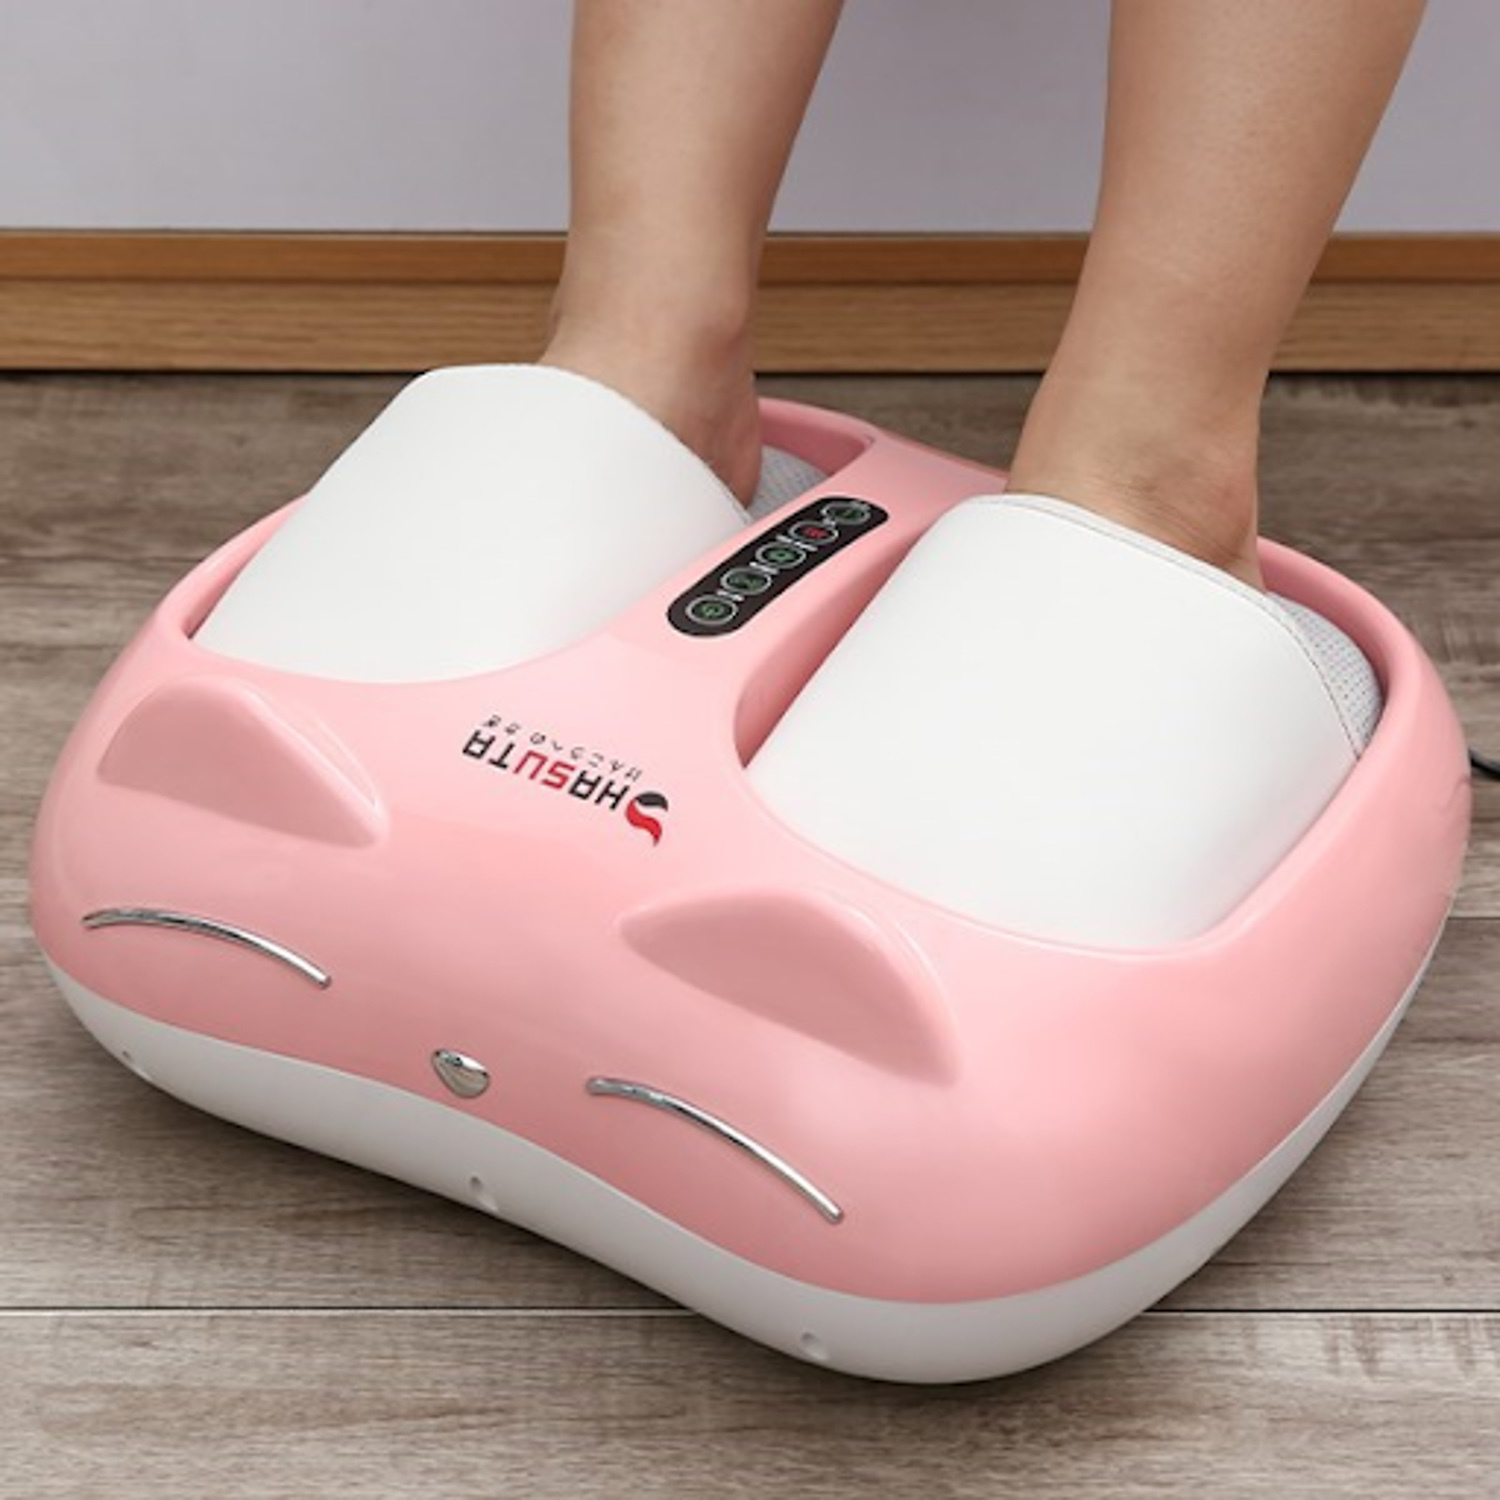 Máy massage là một trong những sản phẩm chất lượng hàng đầu của thương hiệu Hasuta